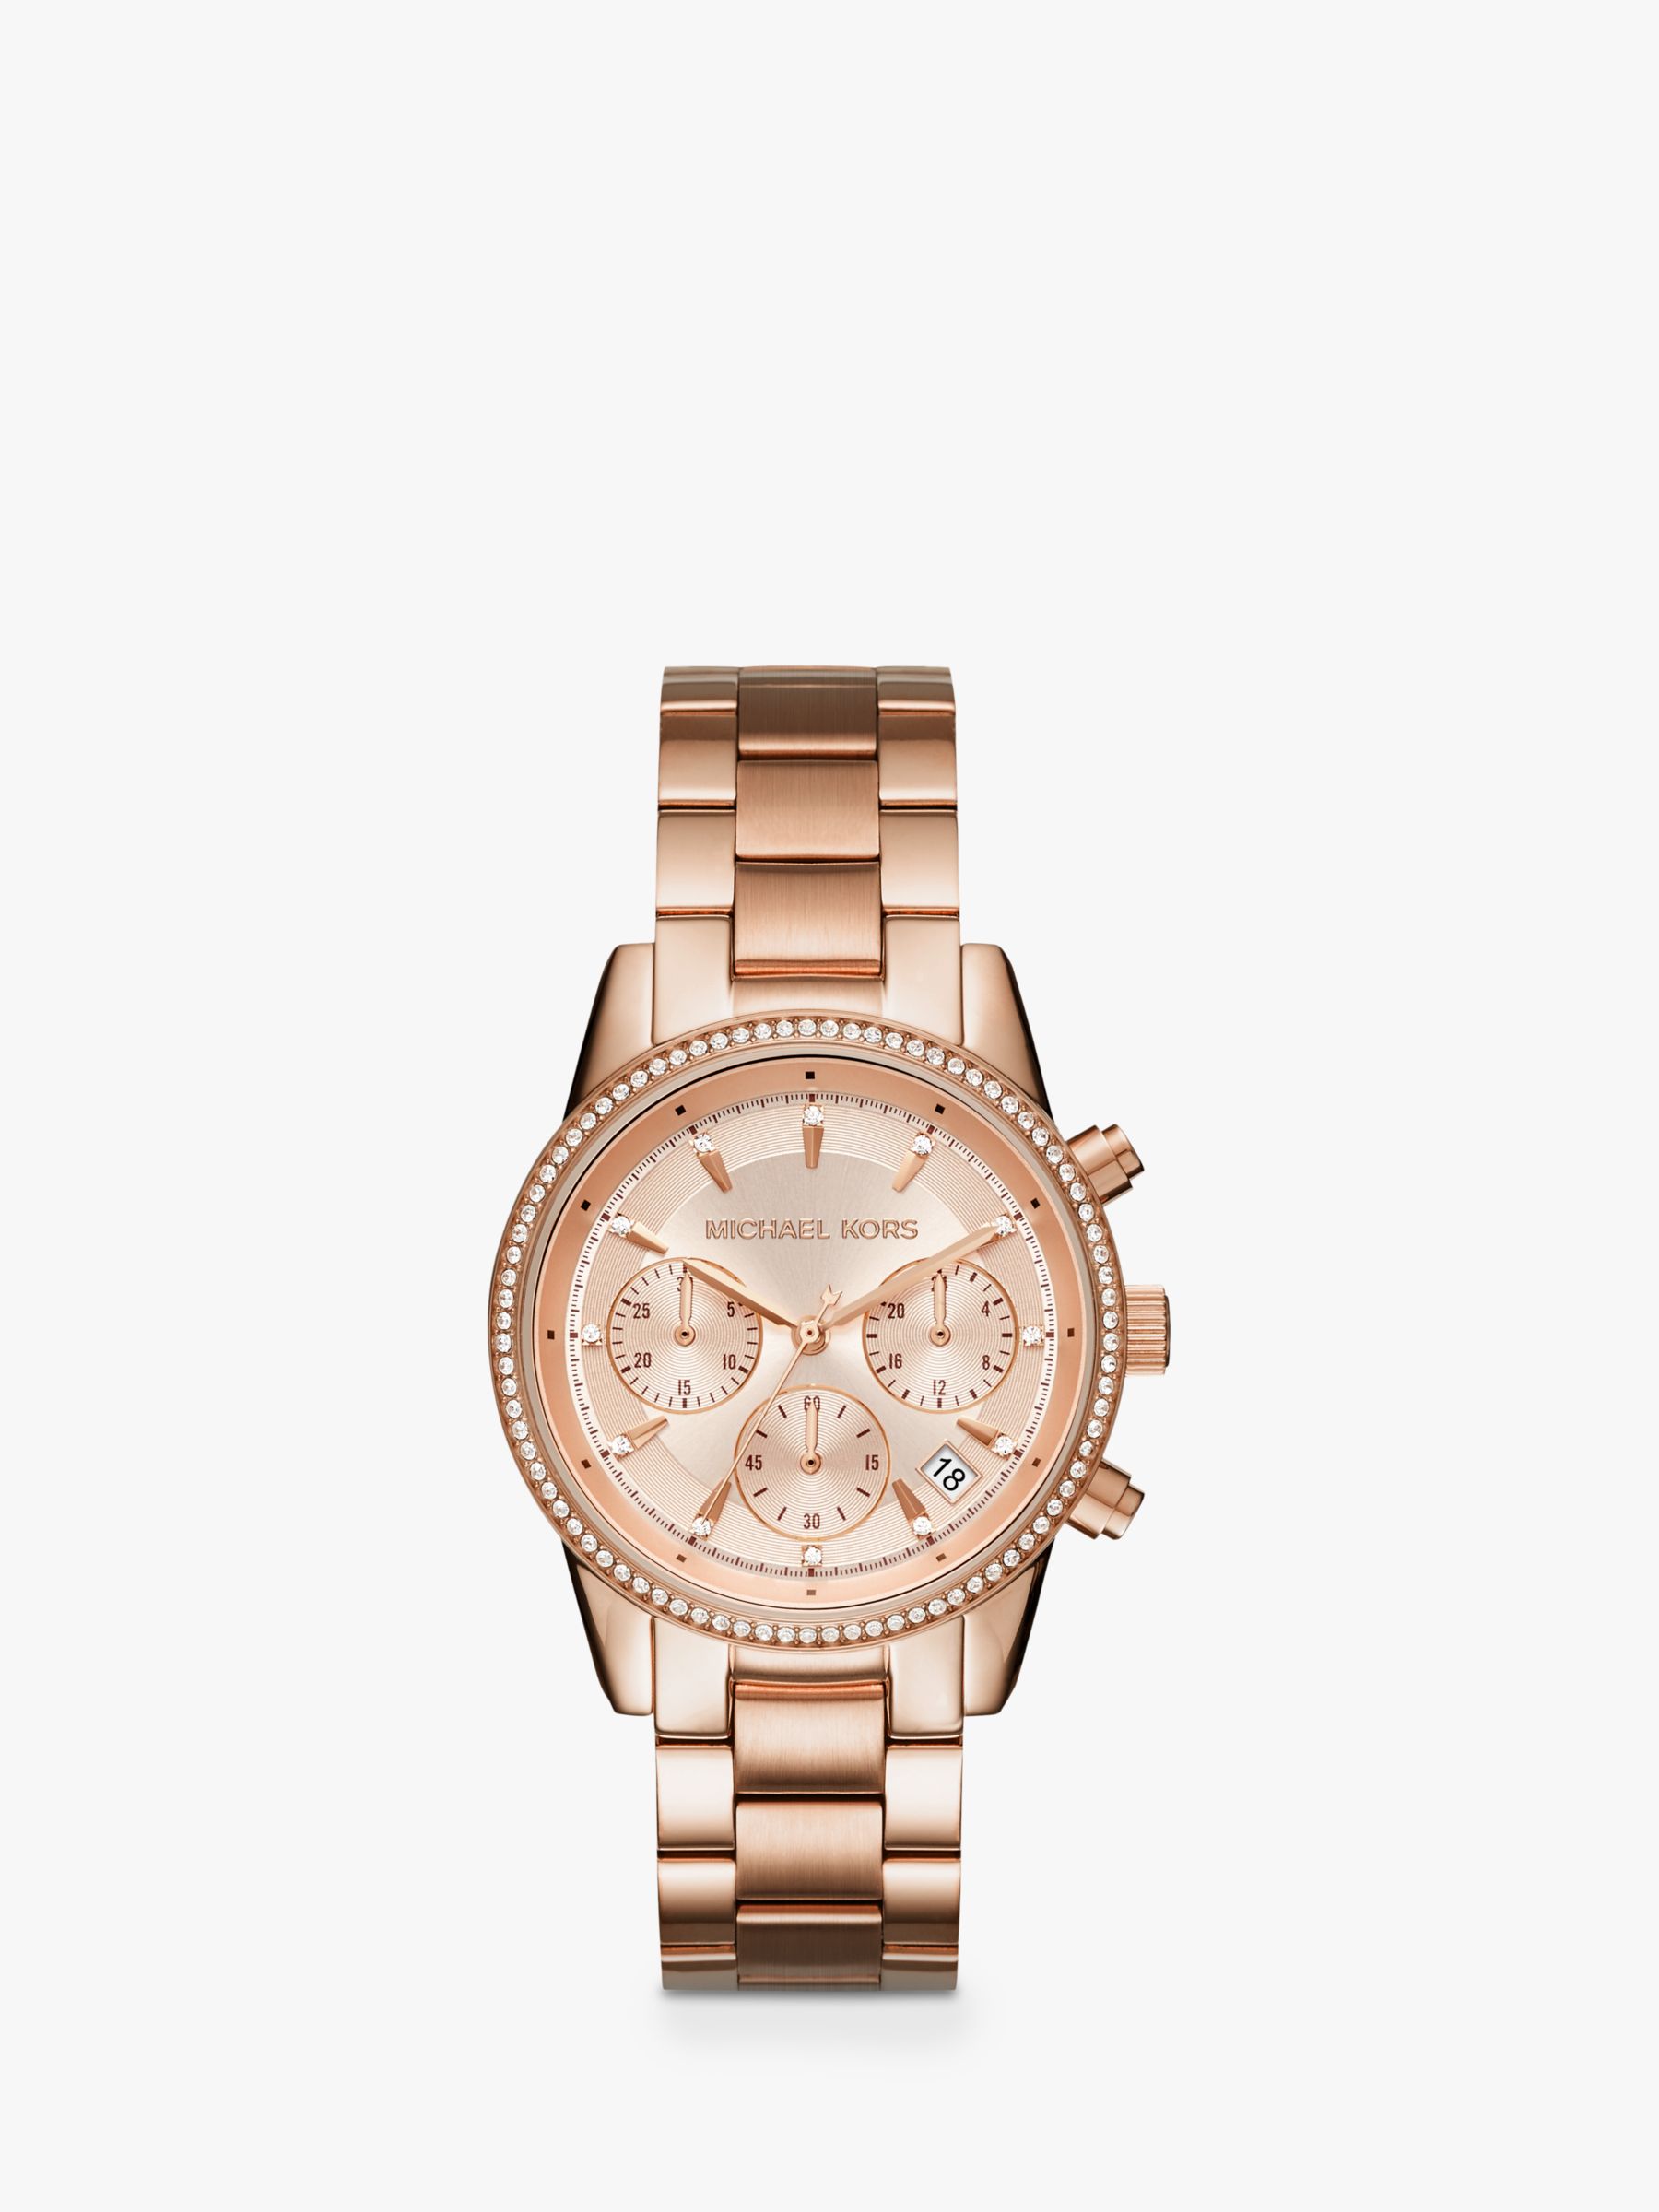 Michael Kors MK6357 Ladies Ritz Rose Gold Watch